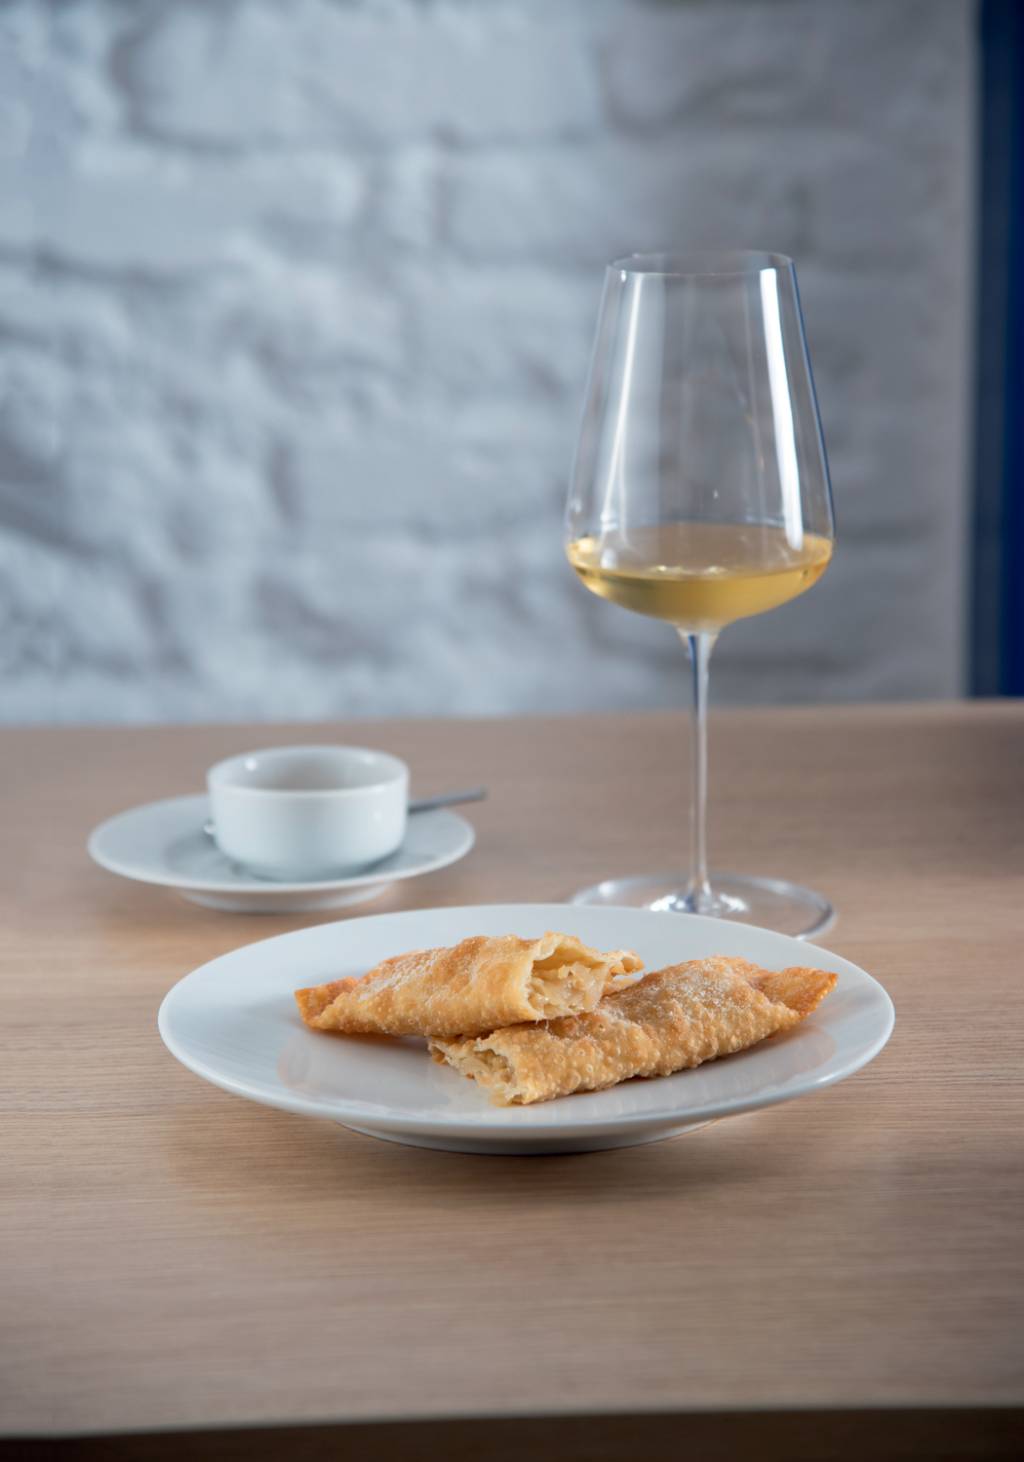 Prato de louça branca com dois pastéis retangulares sobre mesa de mandeira em frente a taça com vinho branco